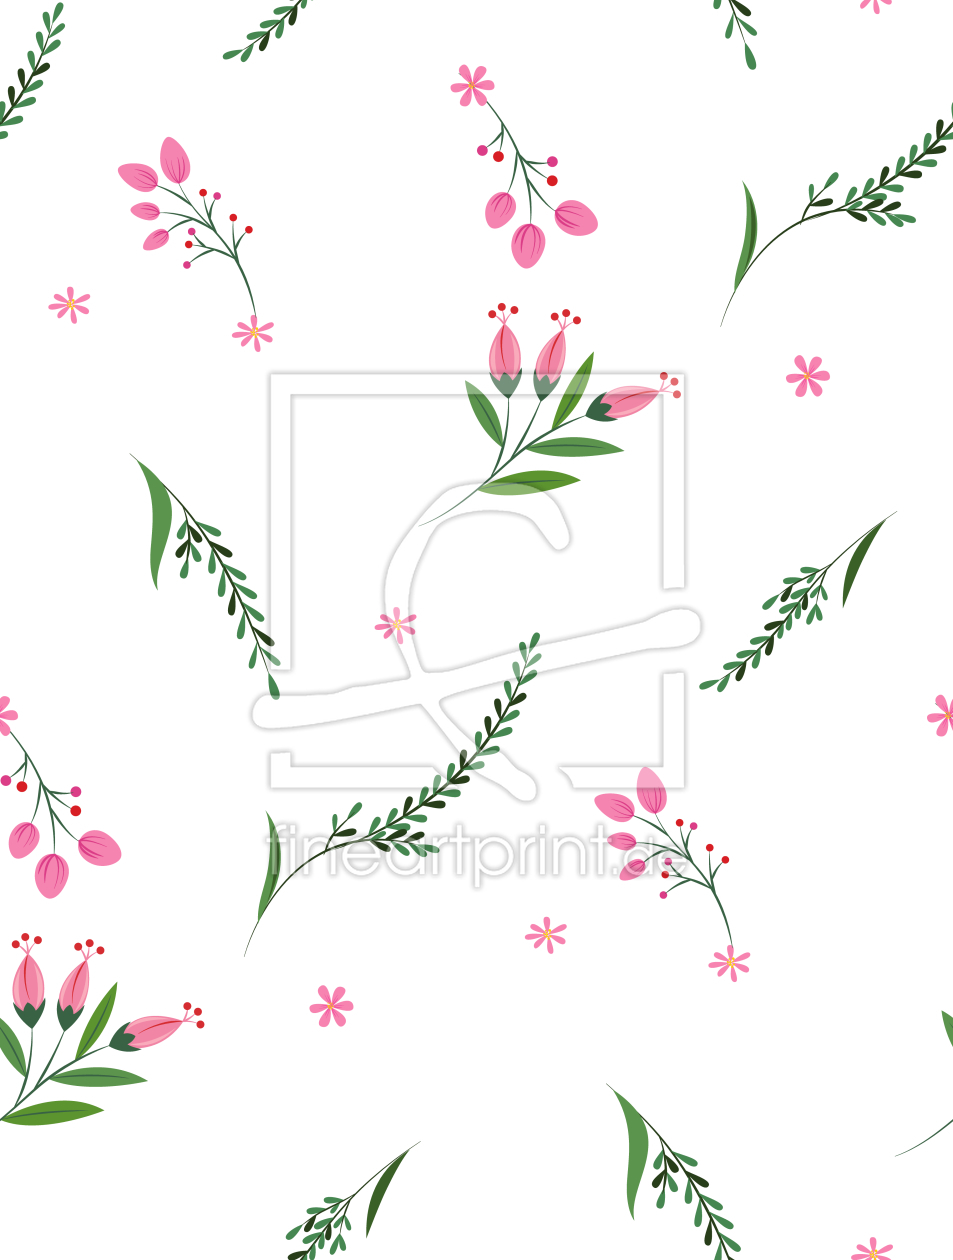 Bild-Nr.: 9015417 Blumen und Pflanzen erstellt von patterndesigns-com